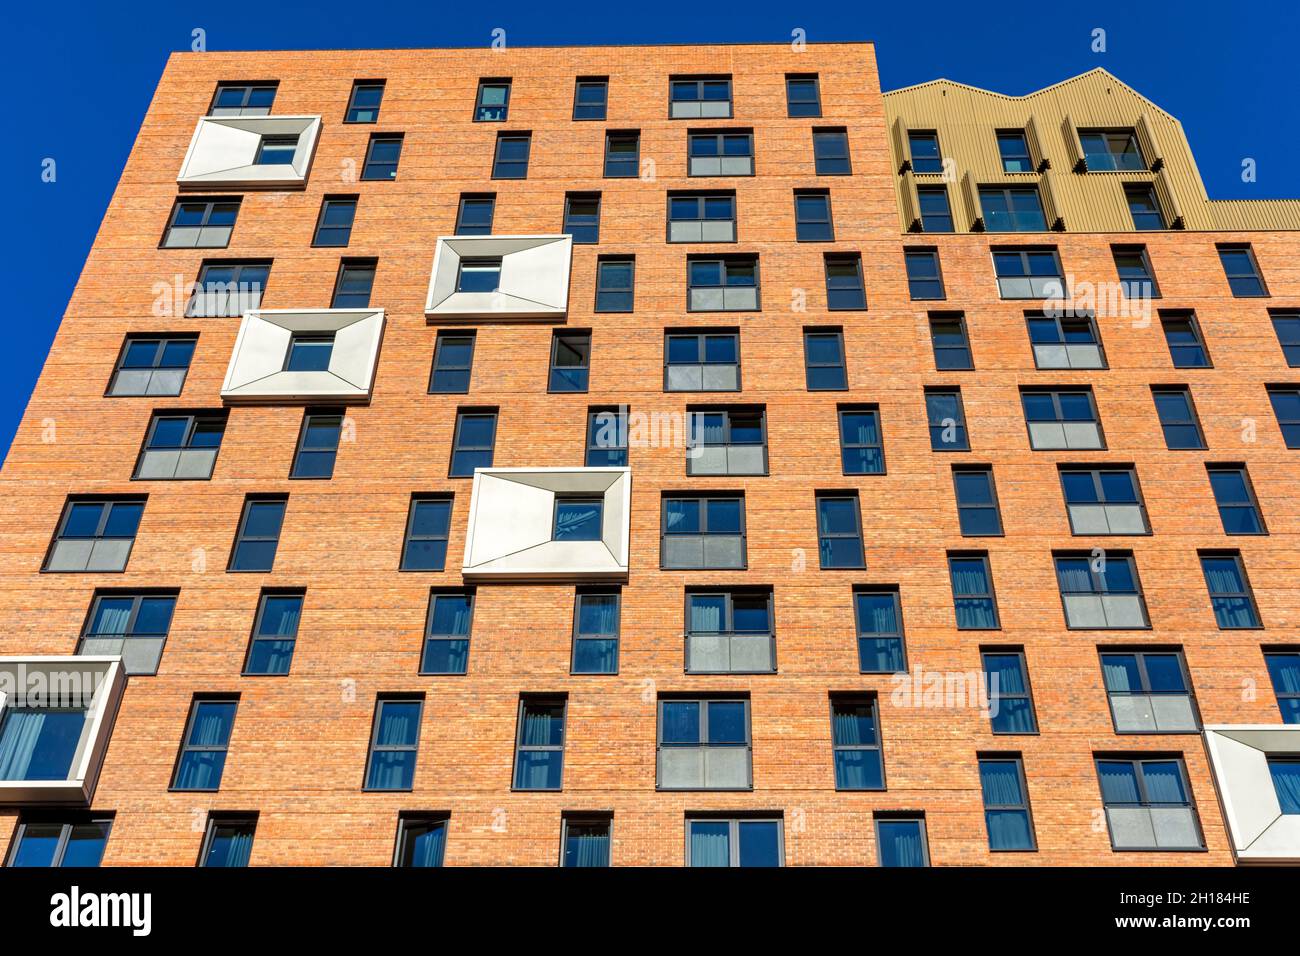 Immeuble dans le développement de Kampus, Manchester, Angleterre, Royaume-Uni.Arc: Meccanoo 2021 Banque D'Images